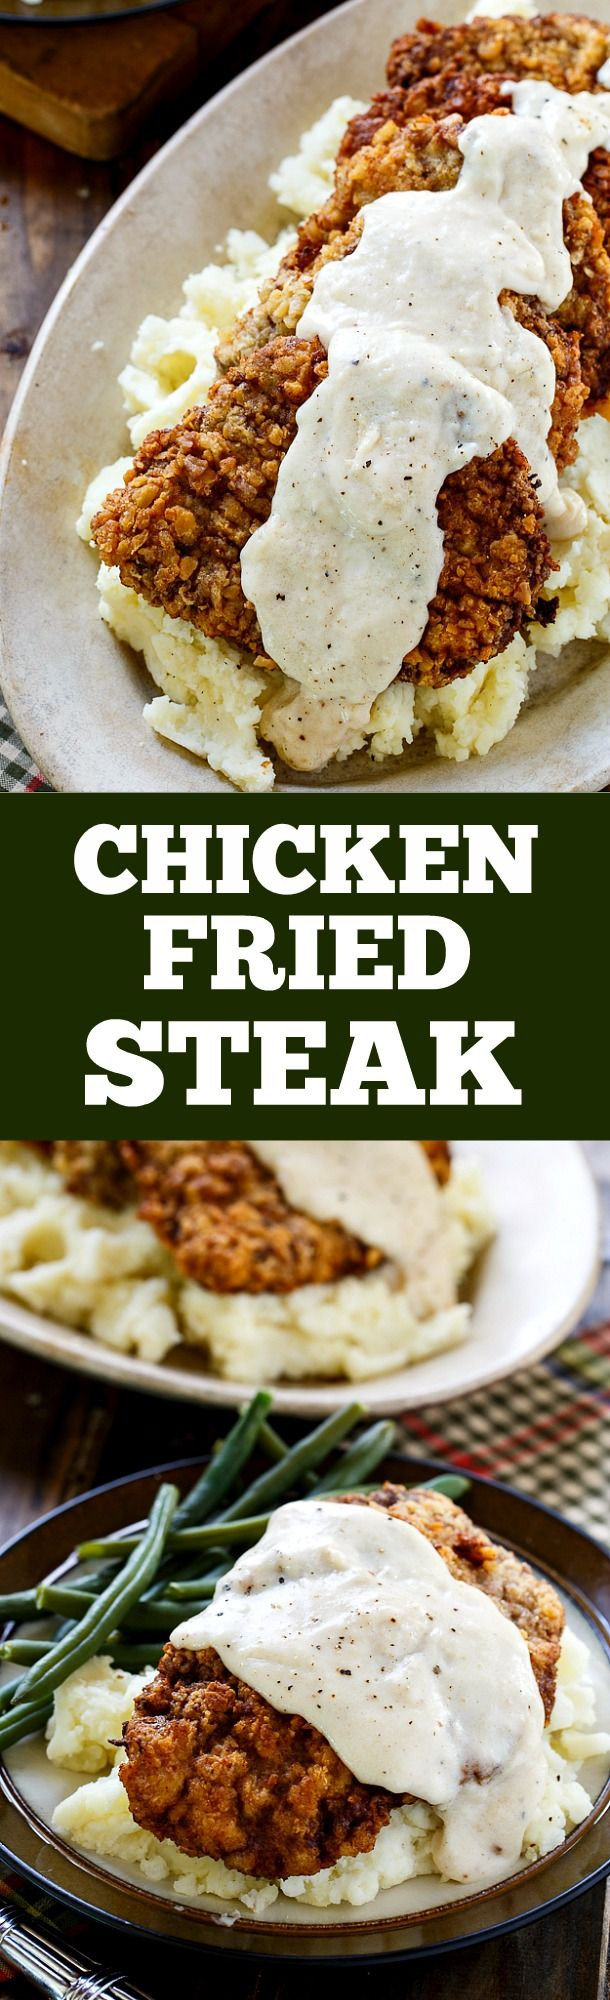 Healthy Chicken Fried Steak
 Best 25 Southern food ideas on Pinterest